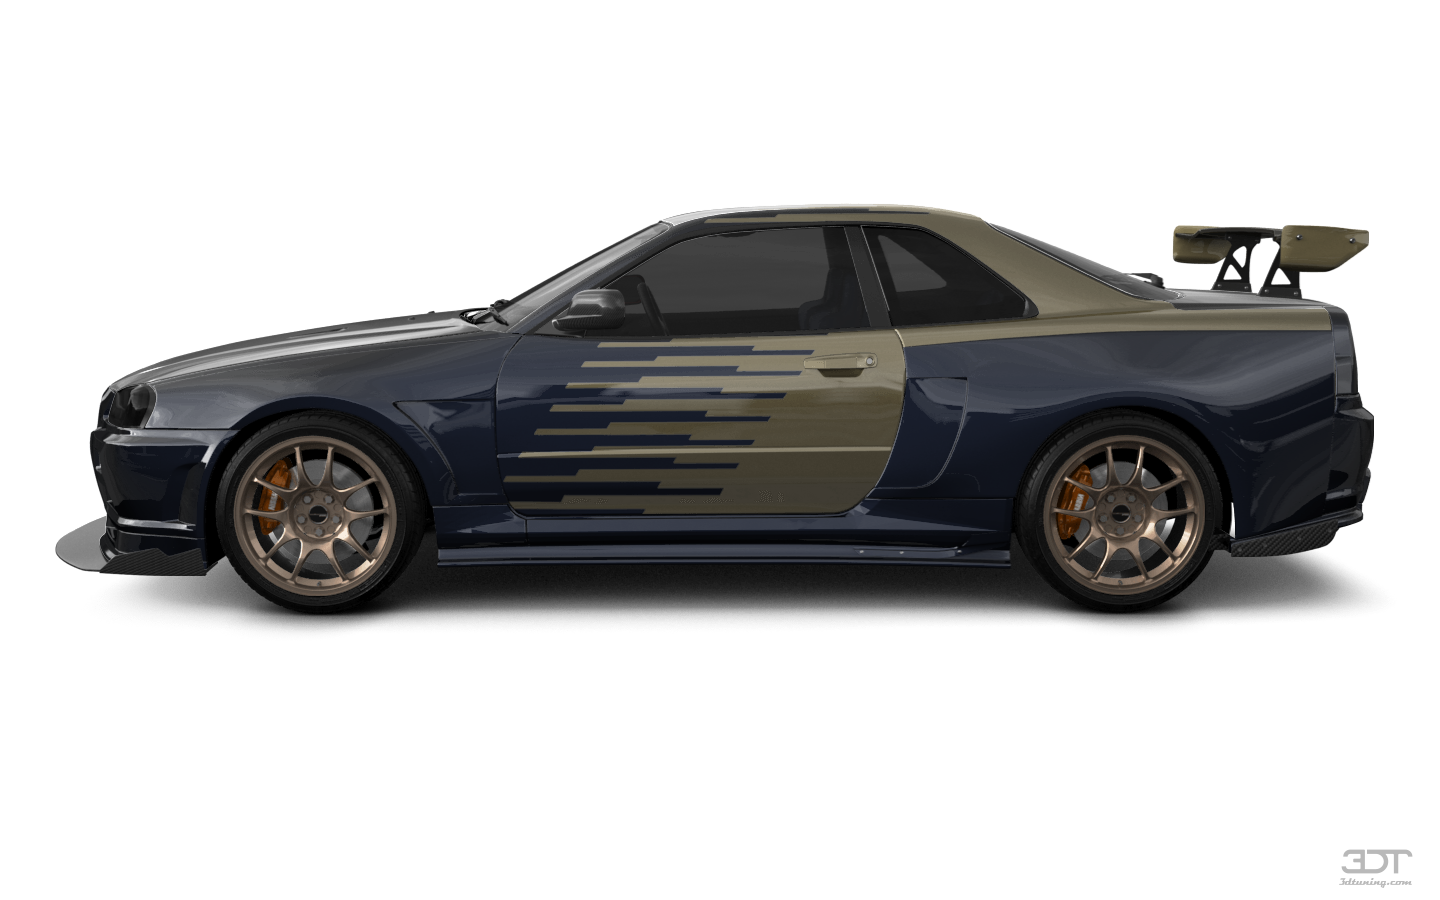 Nissan Skyline GT-R 2 Door Coupe 2000 tuning